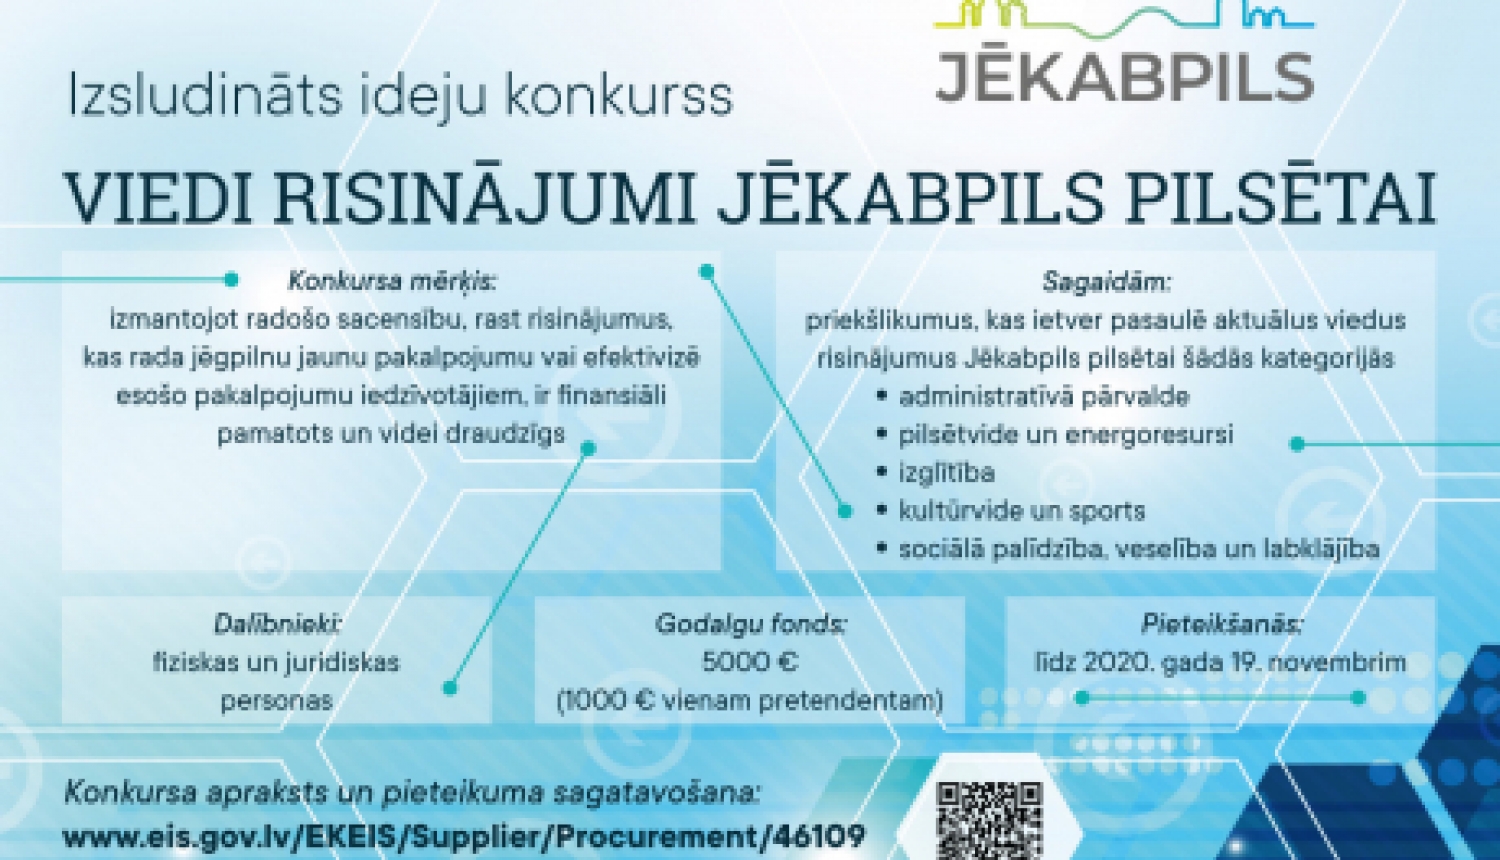 Līdz 19.novembrim vēl var iesniegt idejas konkursam “Viedi risinājumi Jēkabpils pilsētai”